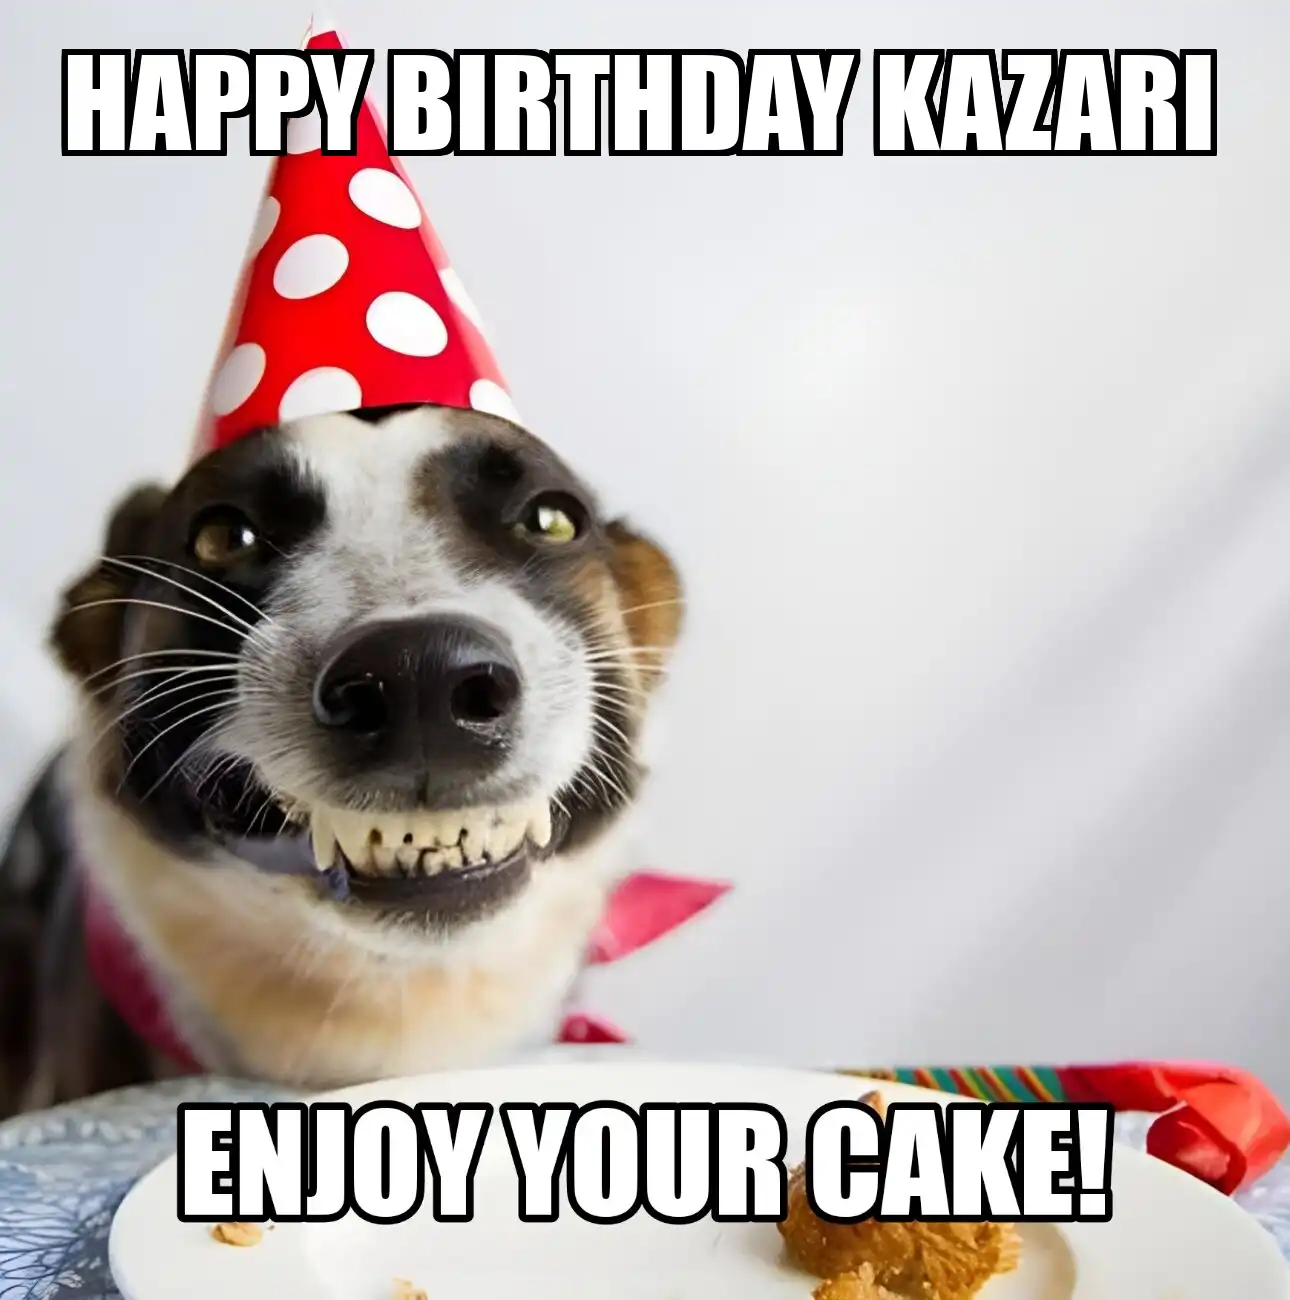 Happy Birthday Kazari Enjoy Your Cake Dog Meme